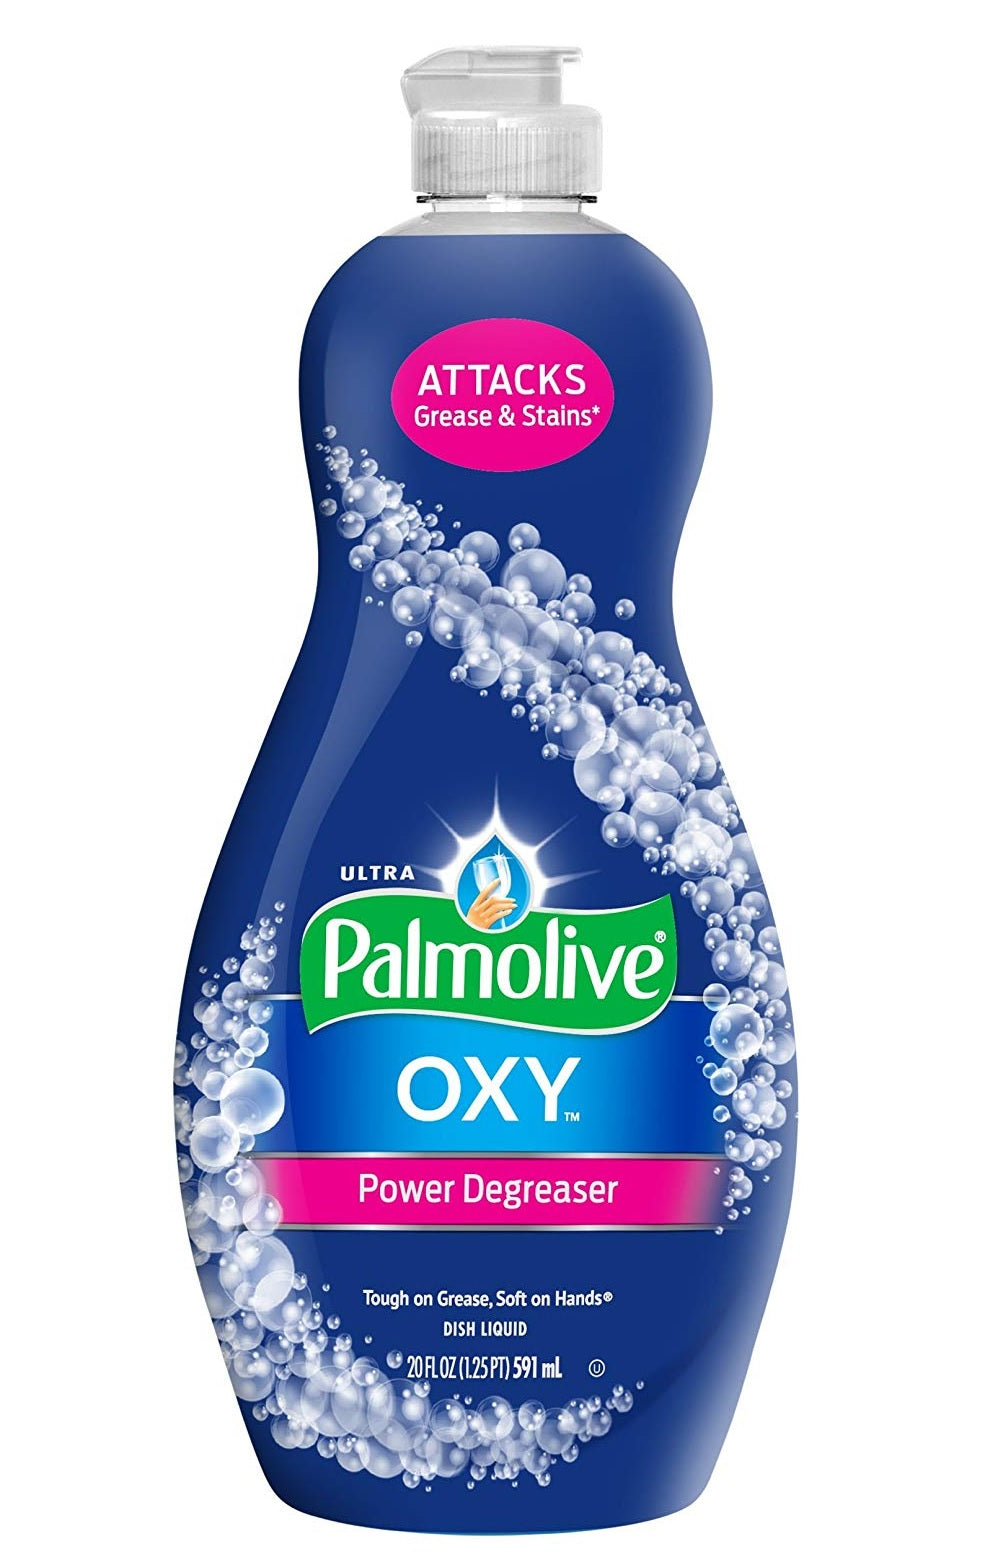 Palmolive US04229A Ultra Oxy Liquid Dish Soap, Original scent, 20 Oz